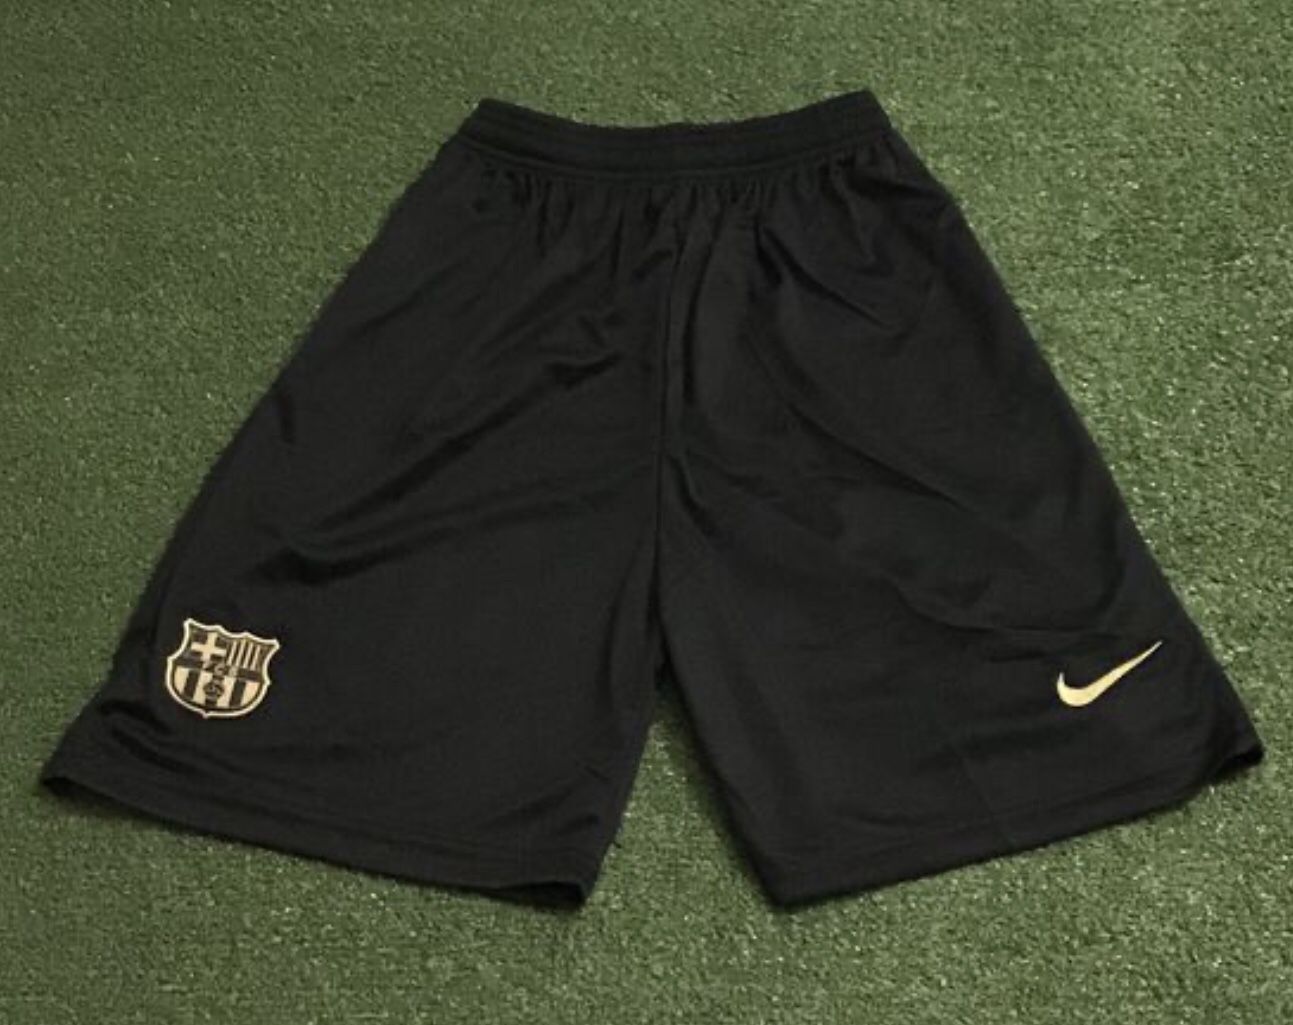 Barcelona Soccer Short .New.Black